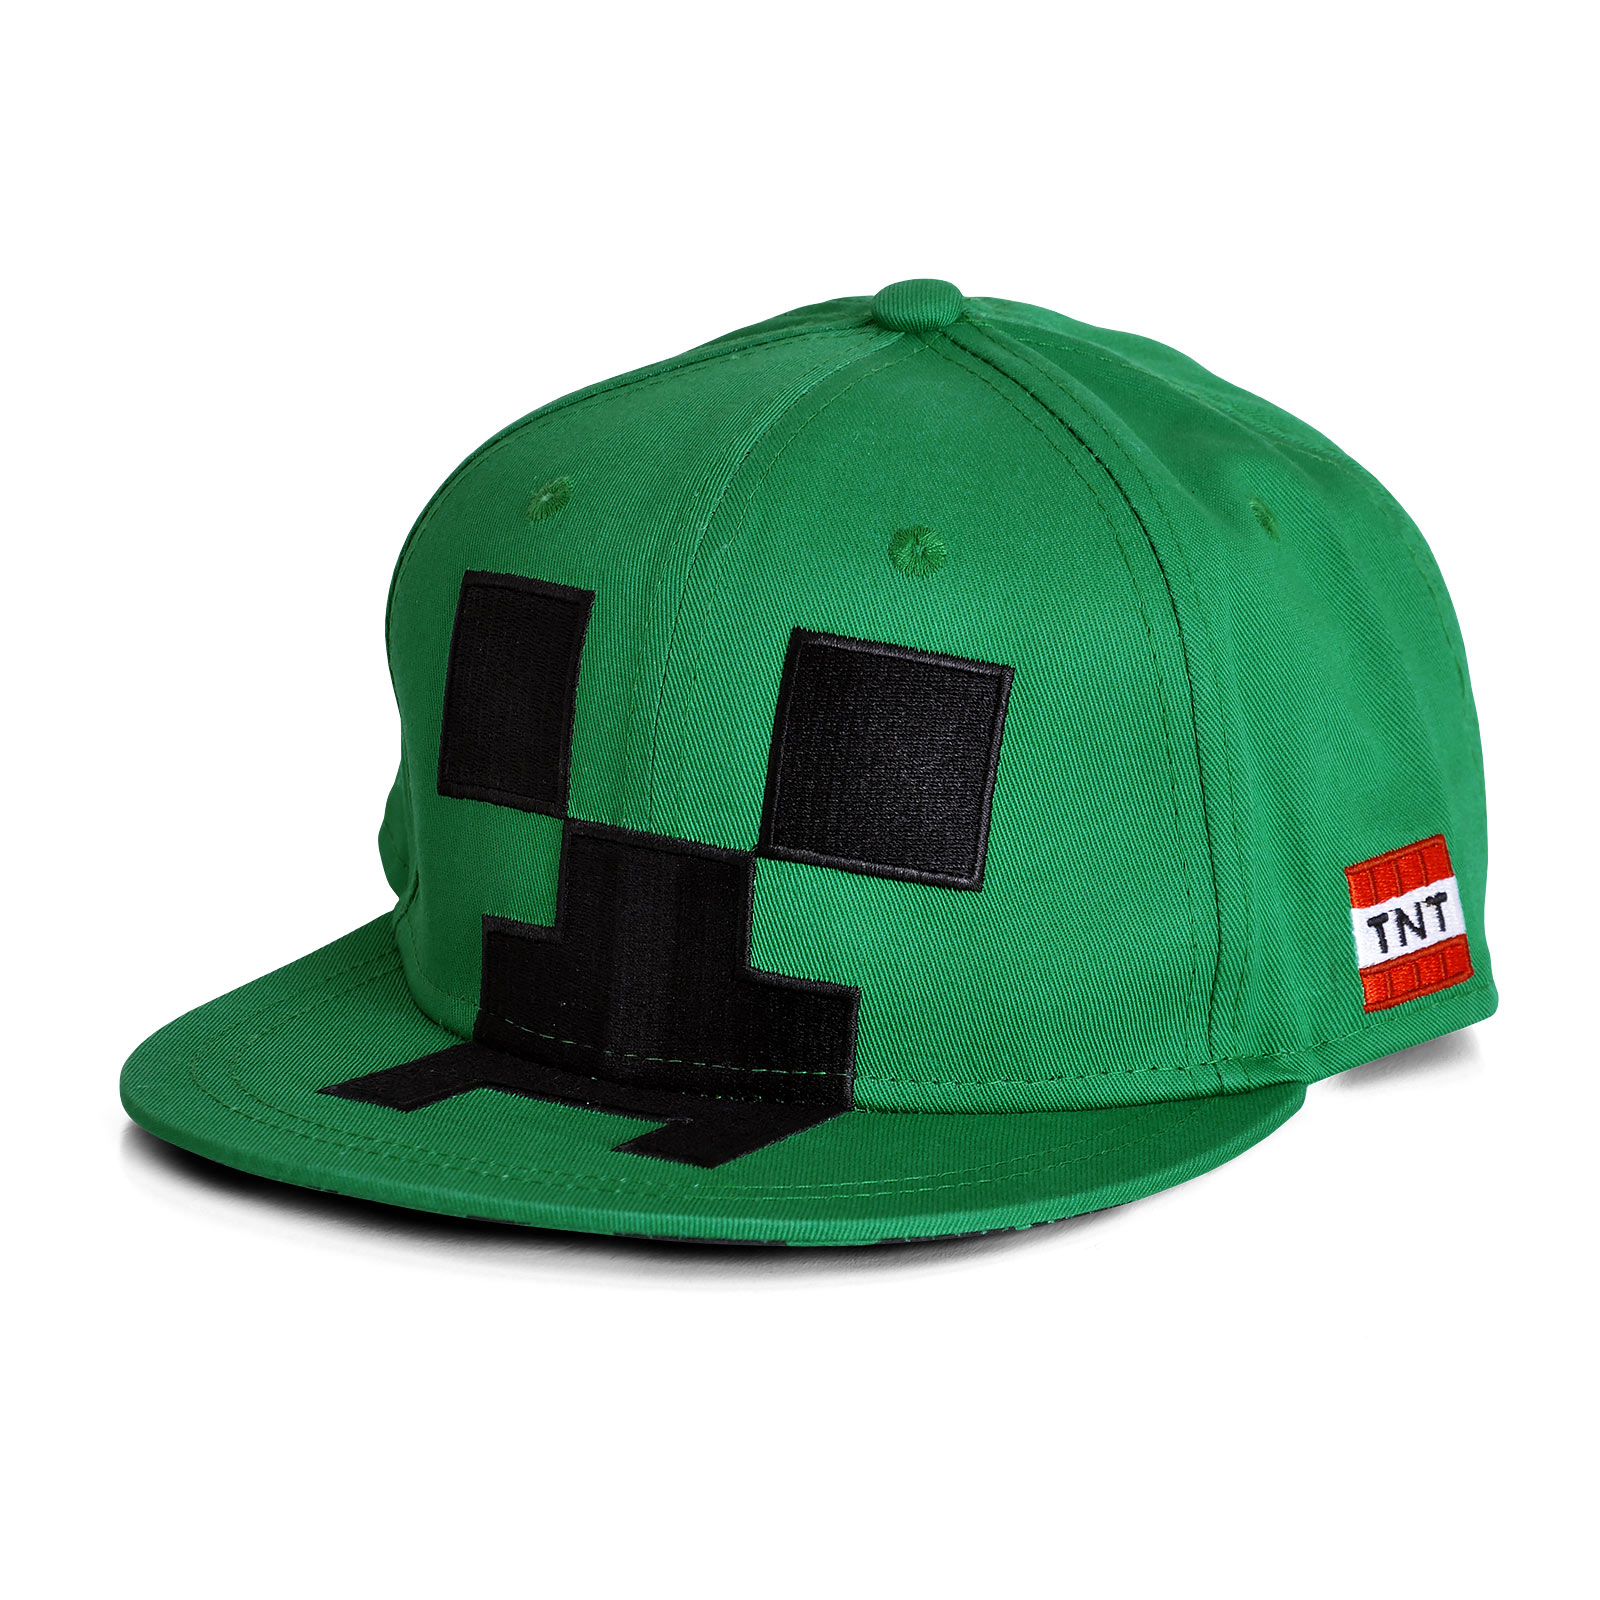 Minecraft - Creeper Snapback Cap voor kinderen groen